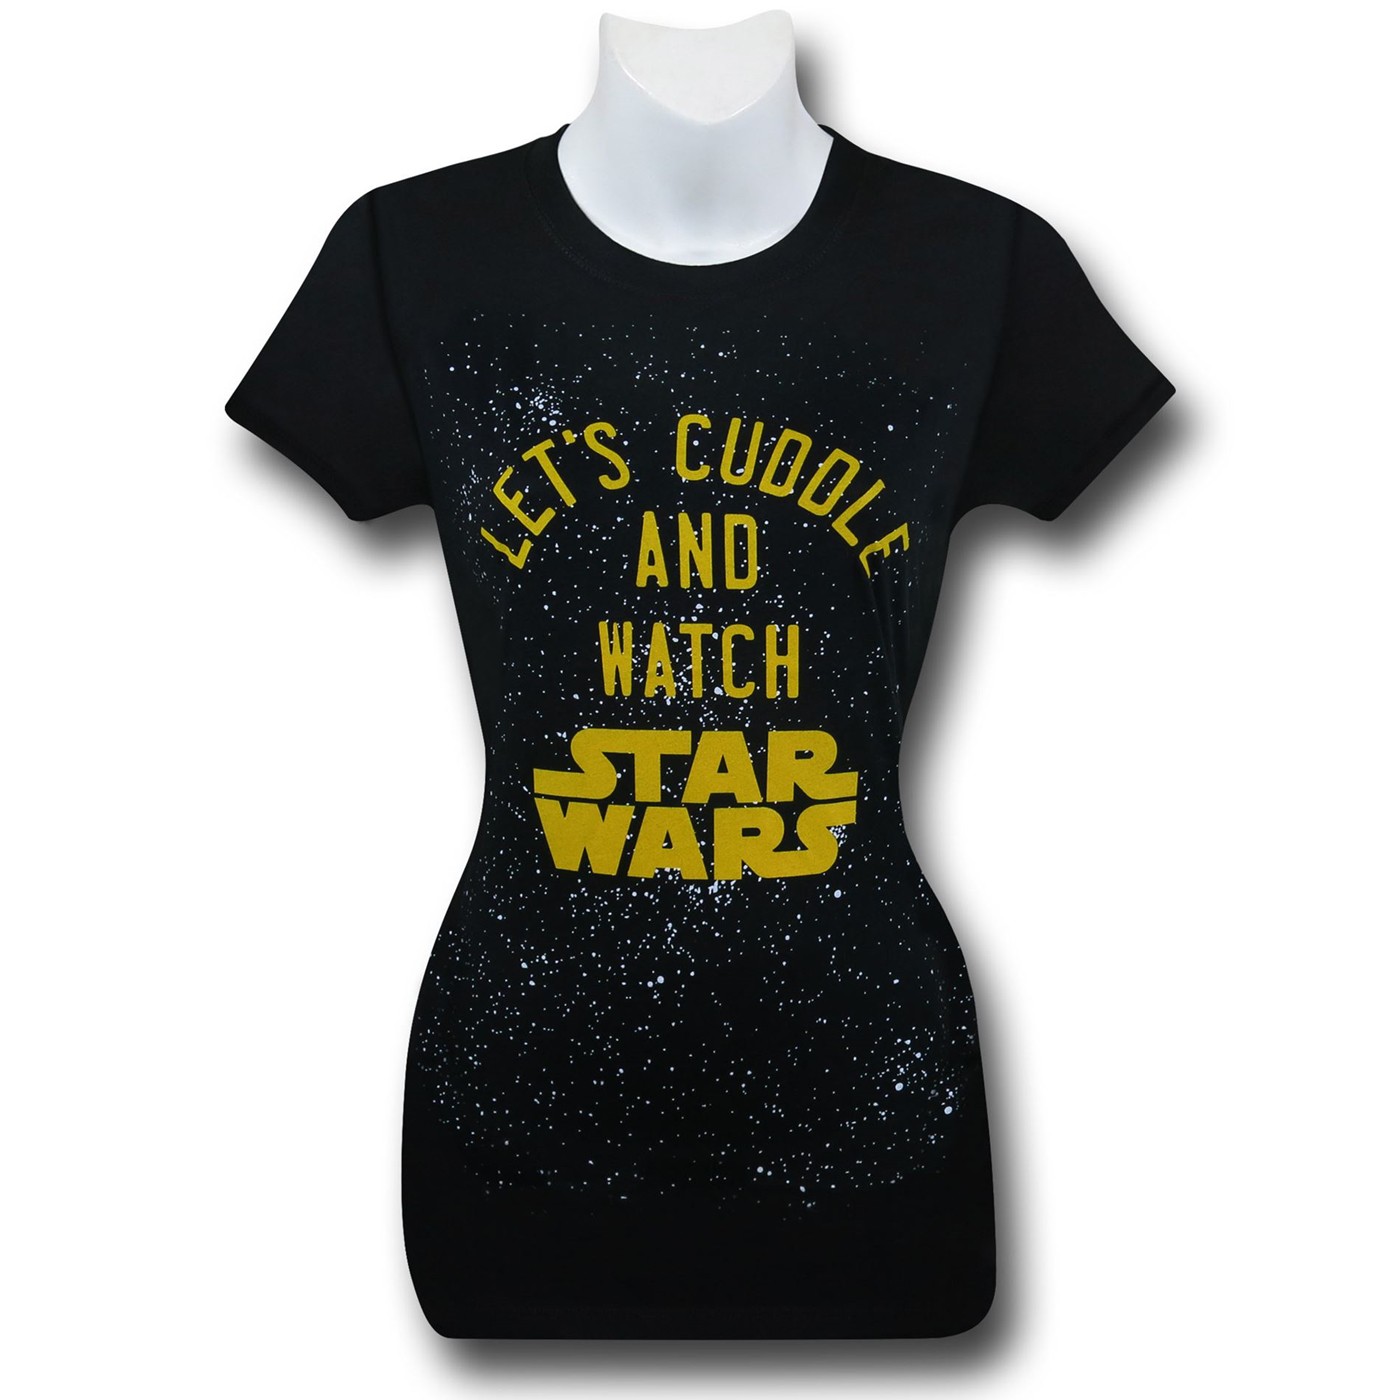 Star Wars Cuddle & Watch Star Wars Women's T-Shirt